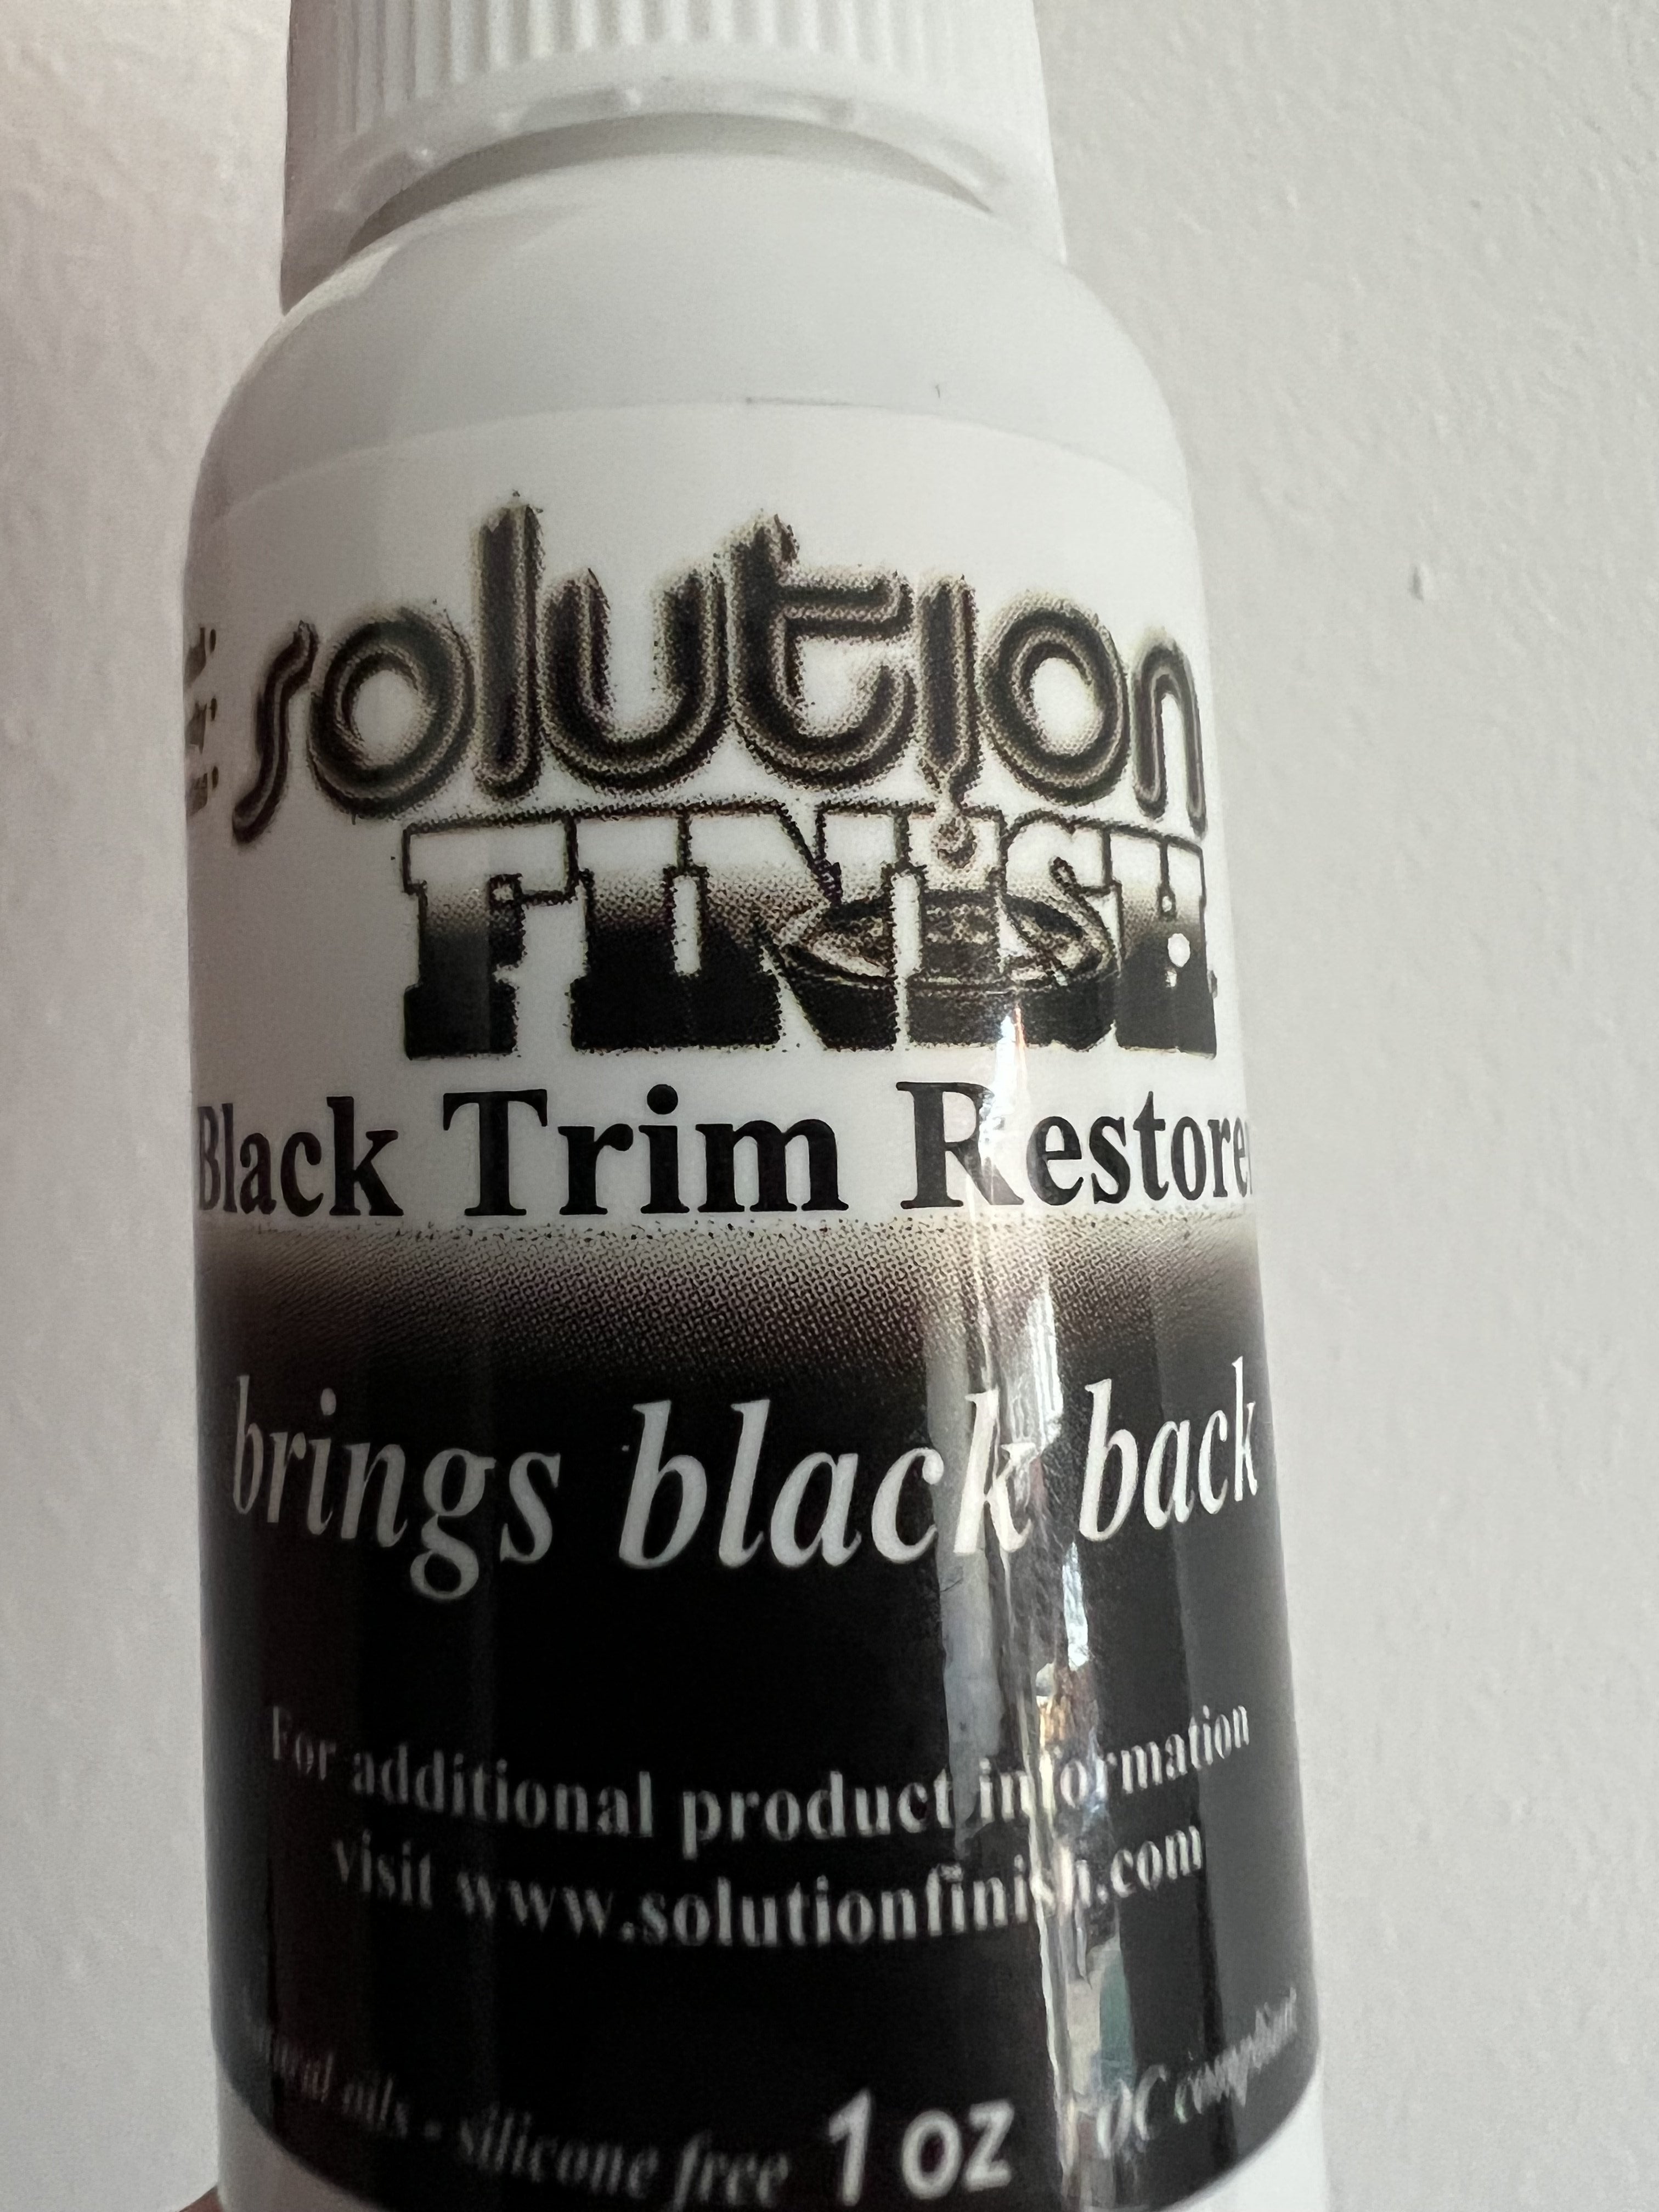 Solution Finish Buy 1 Get 1 Free Trim Restorer - 1 oz Black - Detailed Image